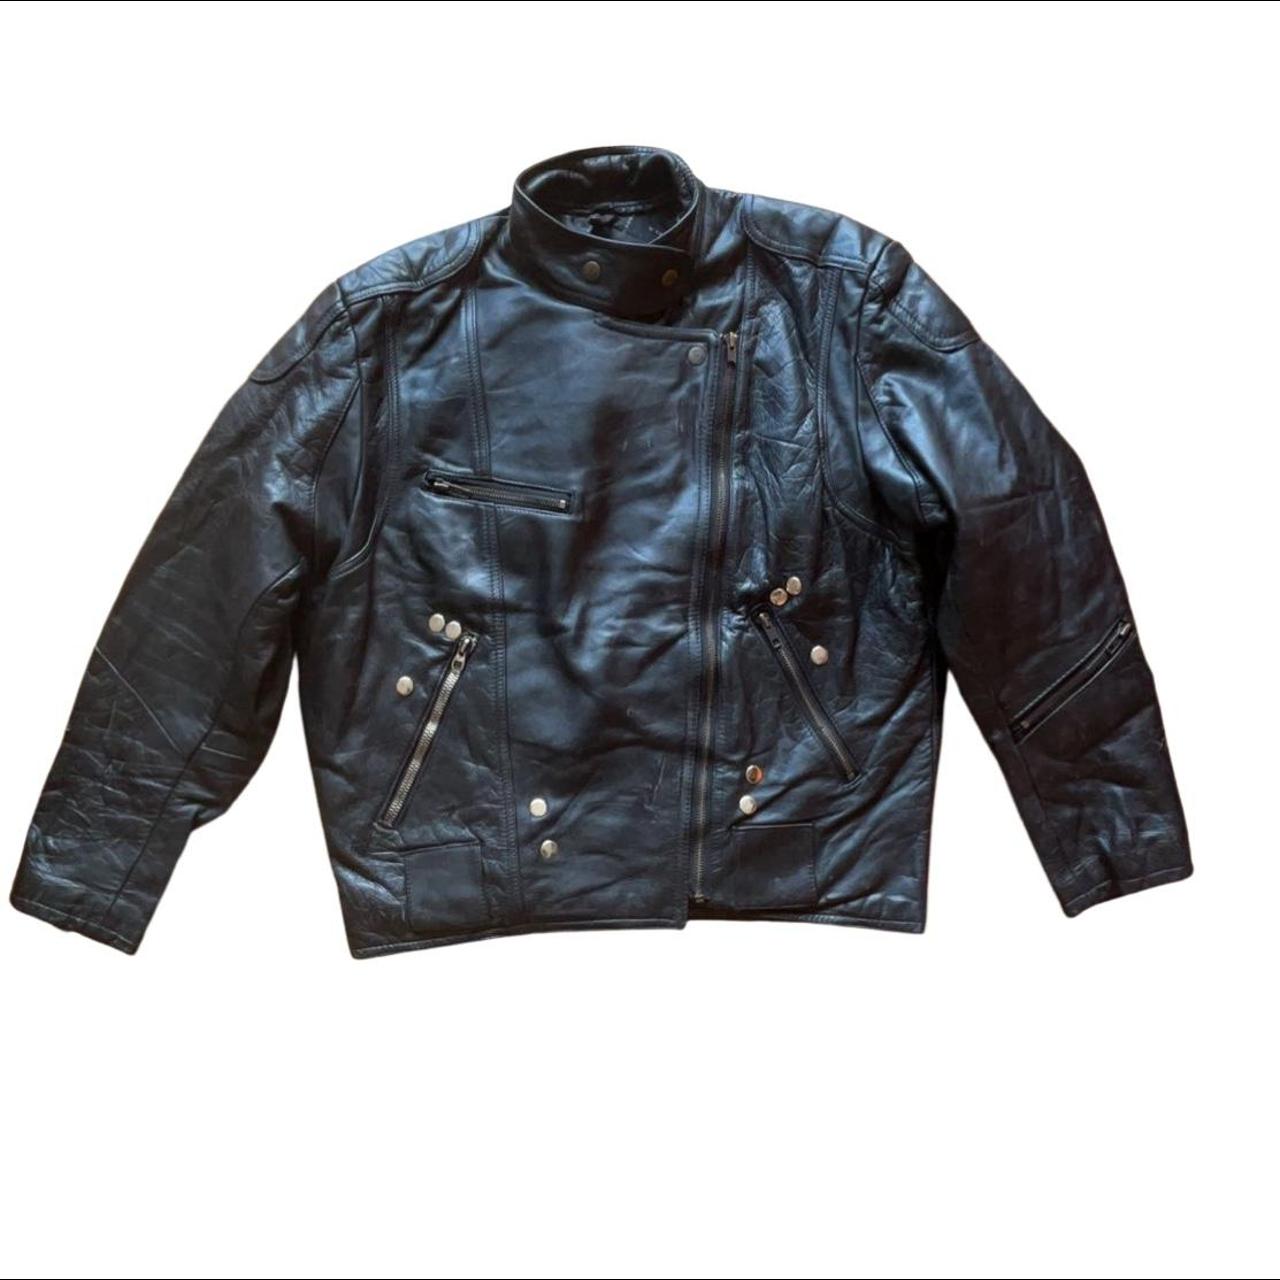 Effy Stonem black leather jacket. Real leather biker... - Depop